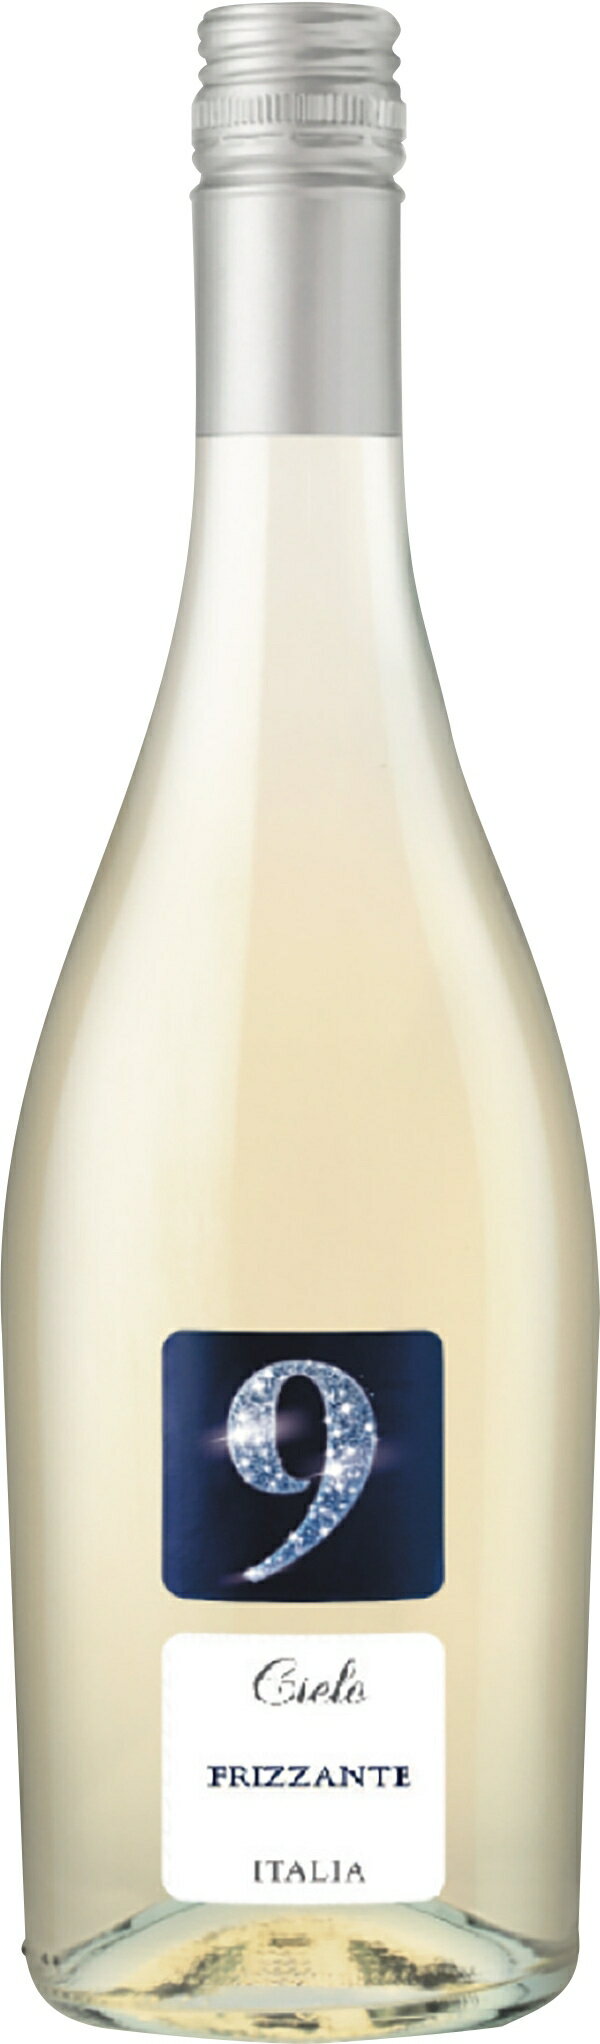 セイコーマート Secoma シエロ9 フリザンテ 白 ワイン スパークリング やや辛口 イタリア ガルガネーガ 微発泡